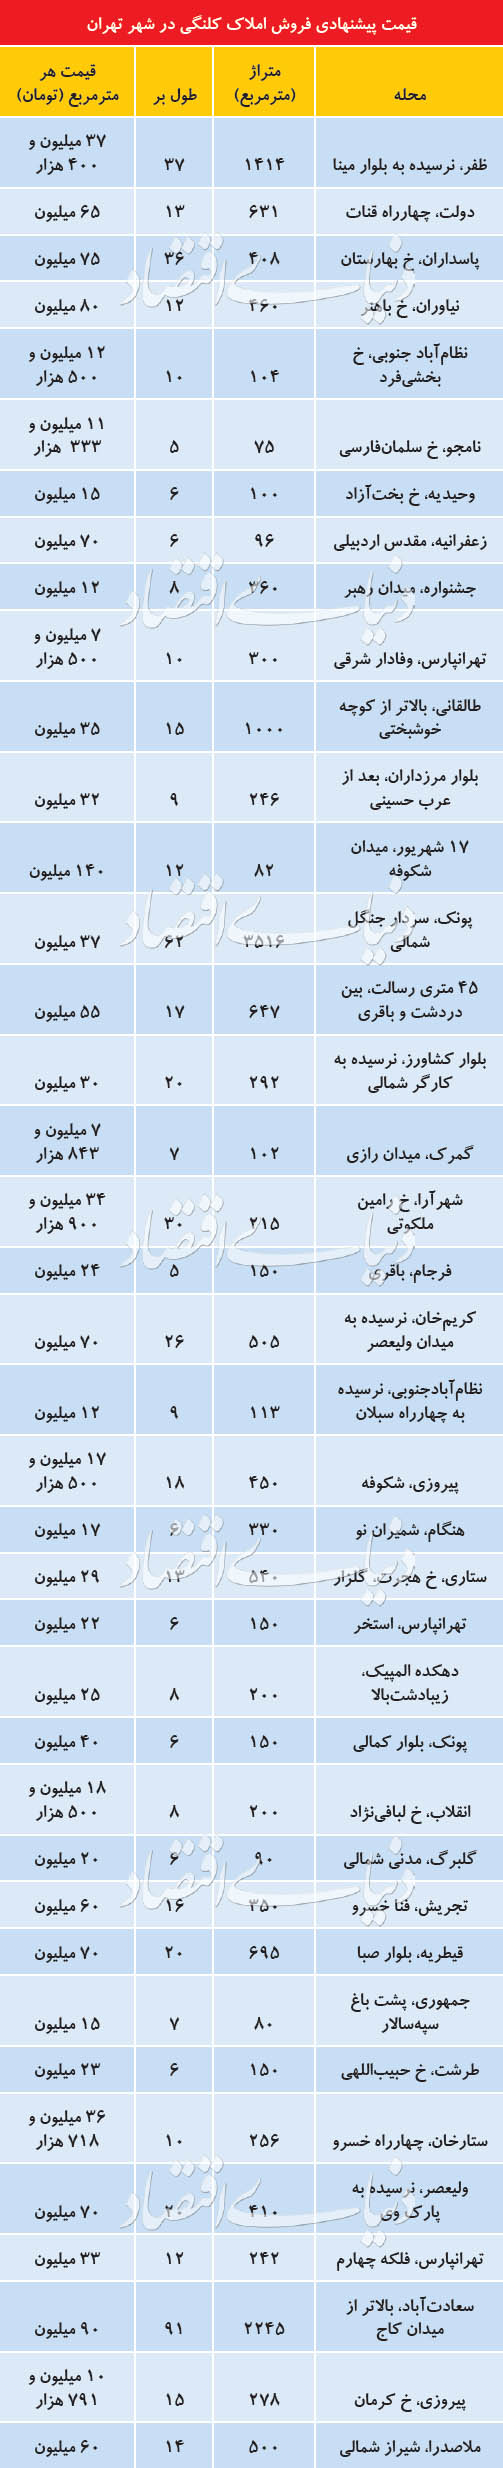 قیمت زمین در تهران